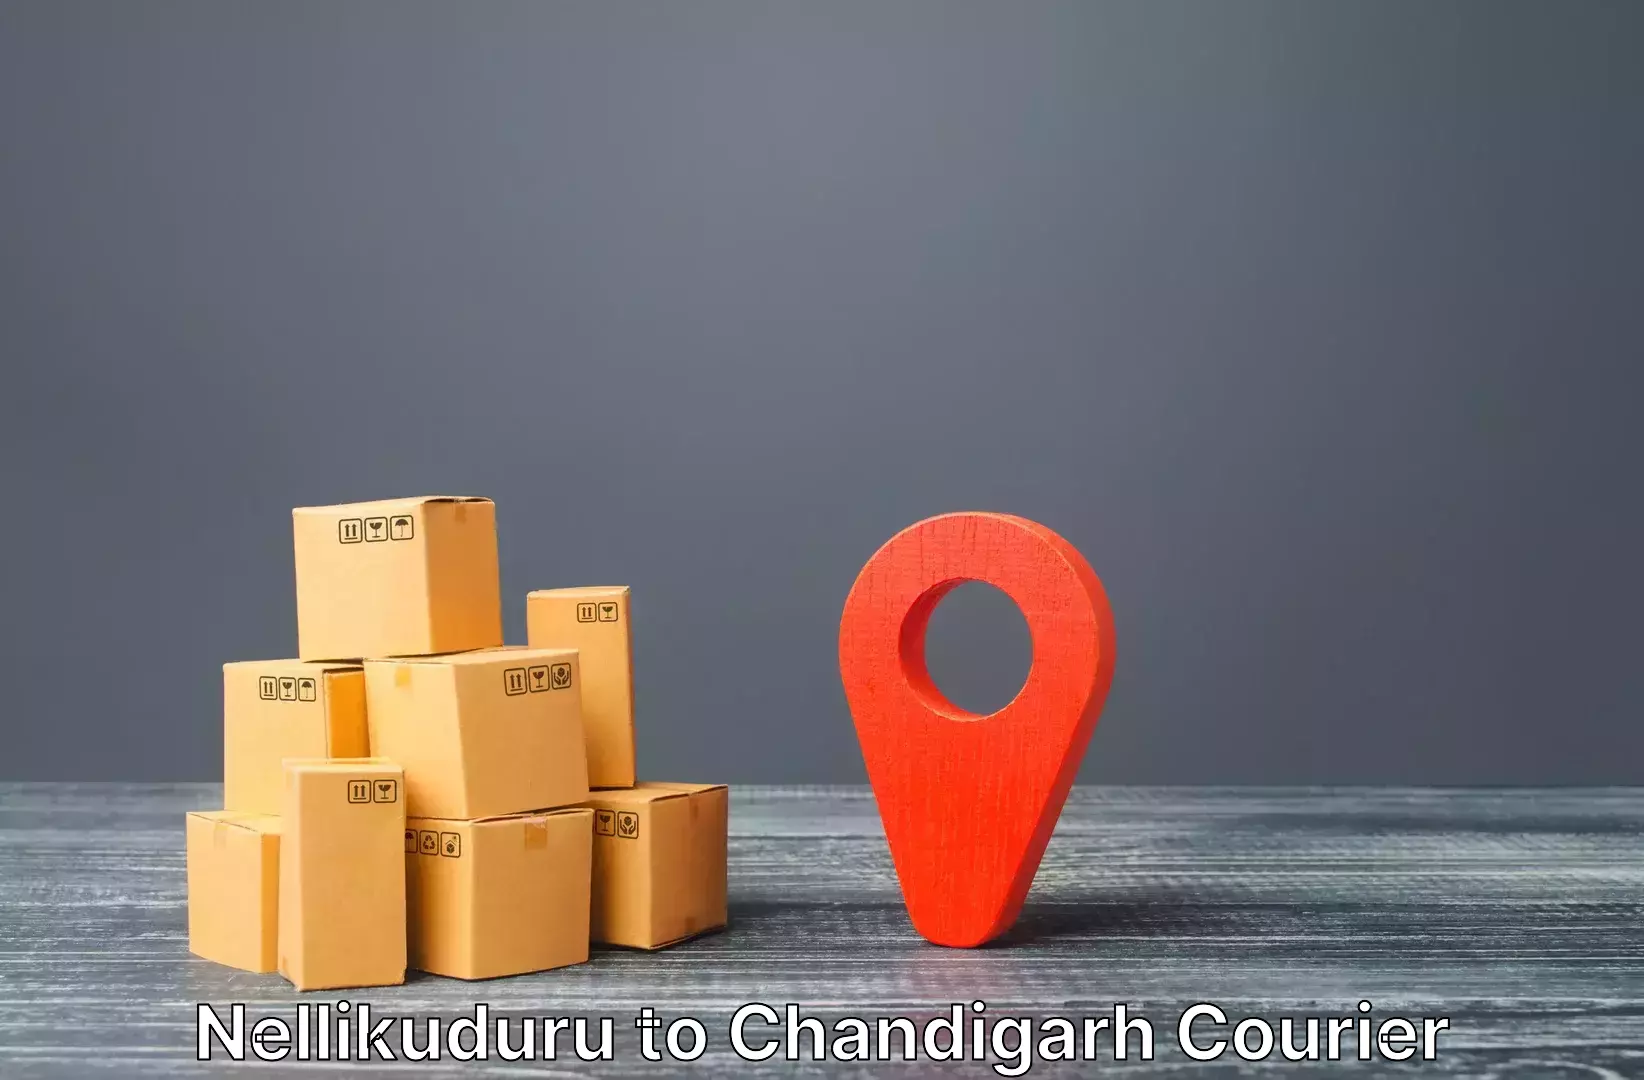 Efficient baggage transport Nellikuduru to Chandigarh